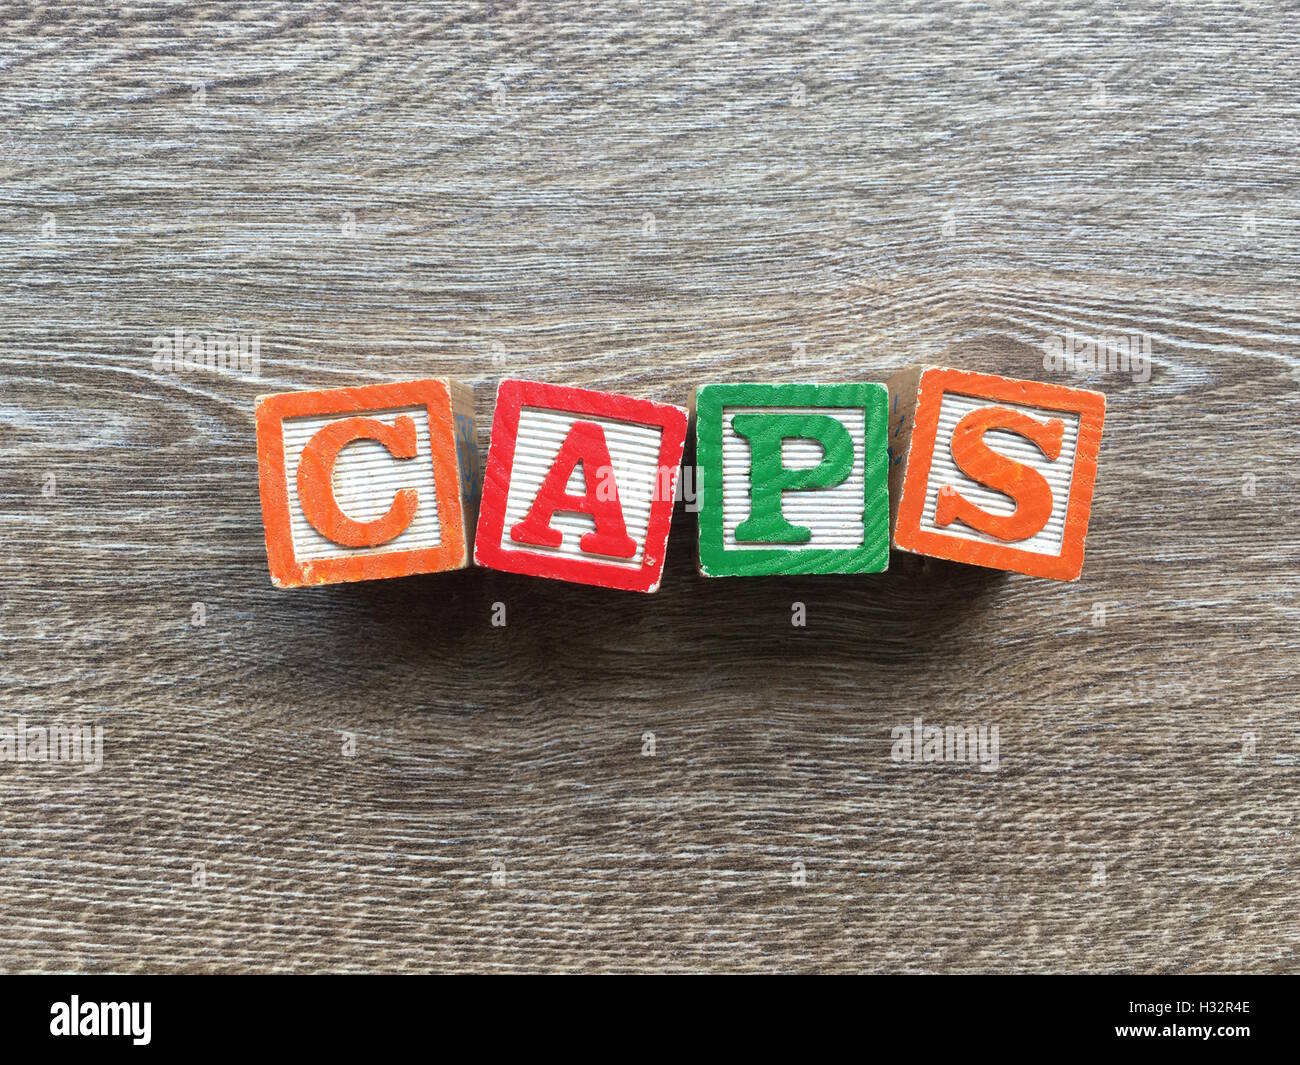 Alfabeto blocco di legno lettere che compongono la parola CAPS, è un modo per i giovani i bambini ad imparare le parole in inglese in un modo divertente Foto Stock